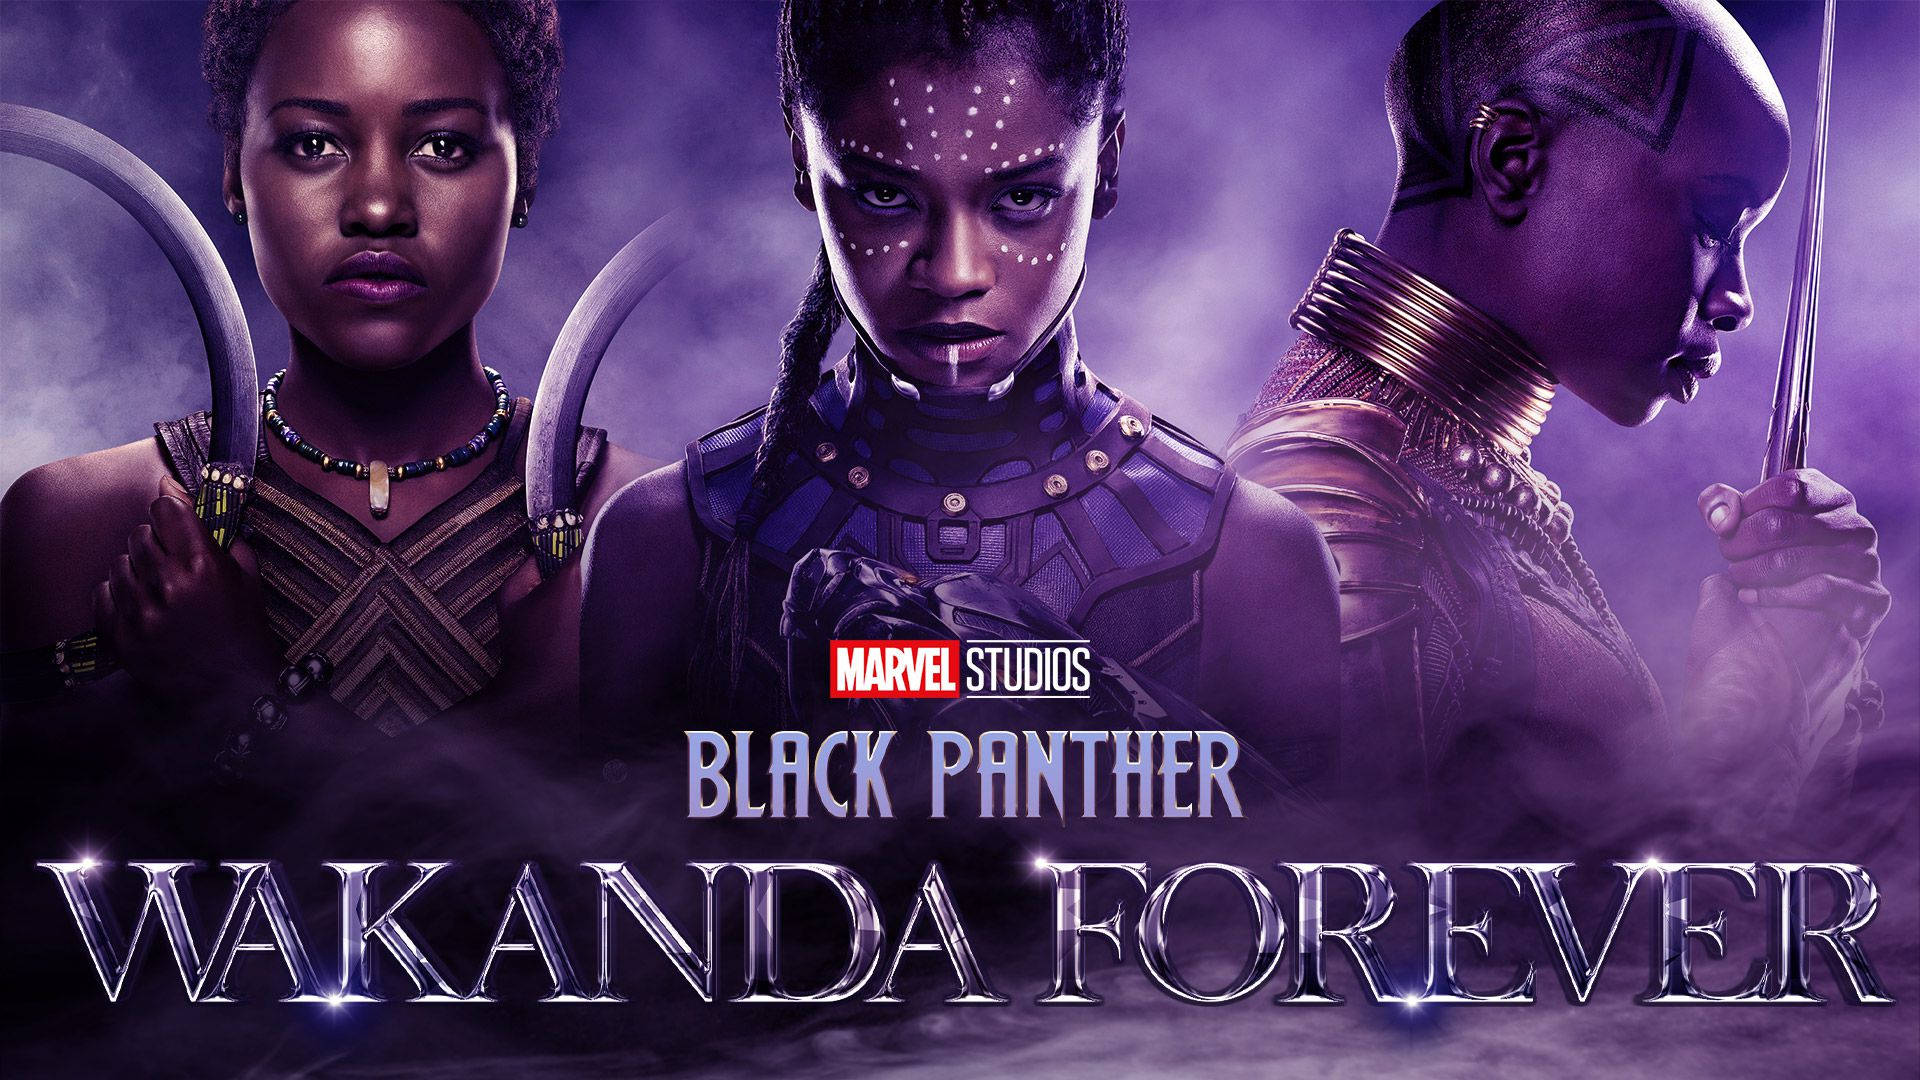 Black Panther Wakanda Forever logo 8K wallpaper download